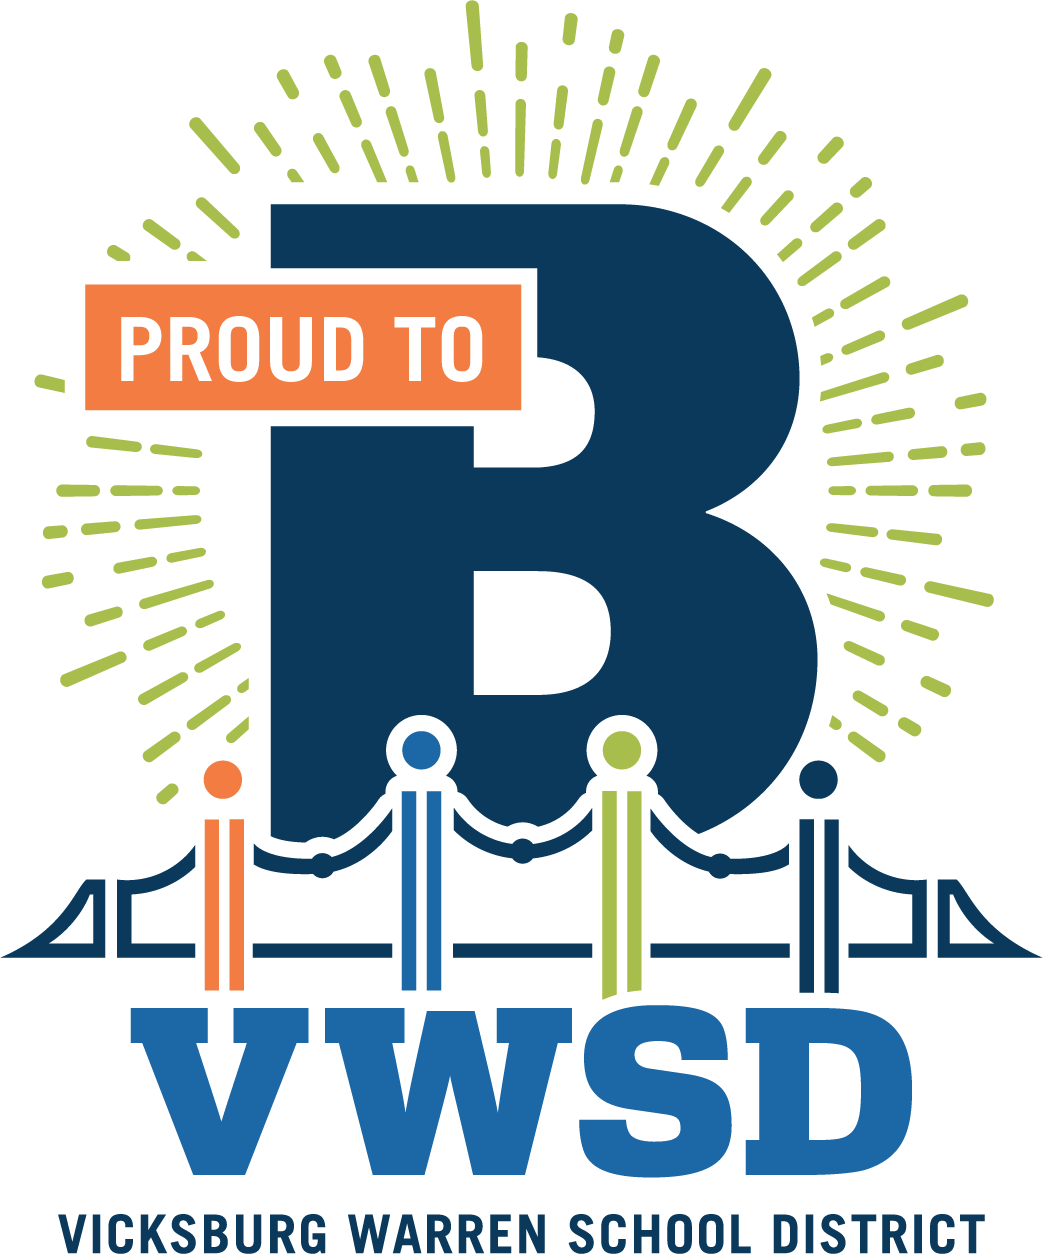 Proud to B VWSD Vicksburg Warren School District